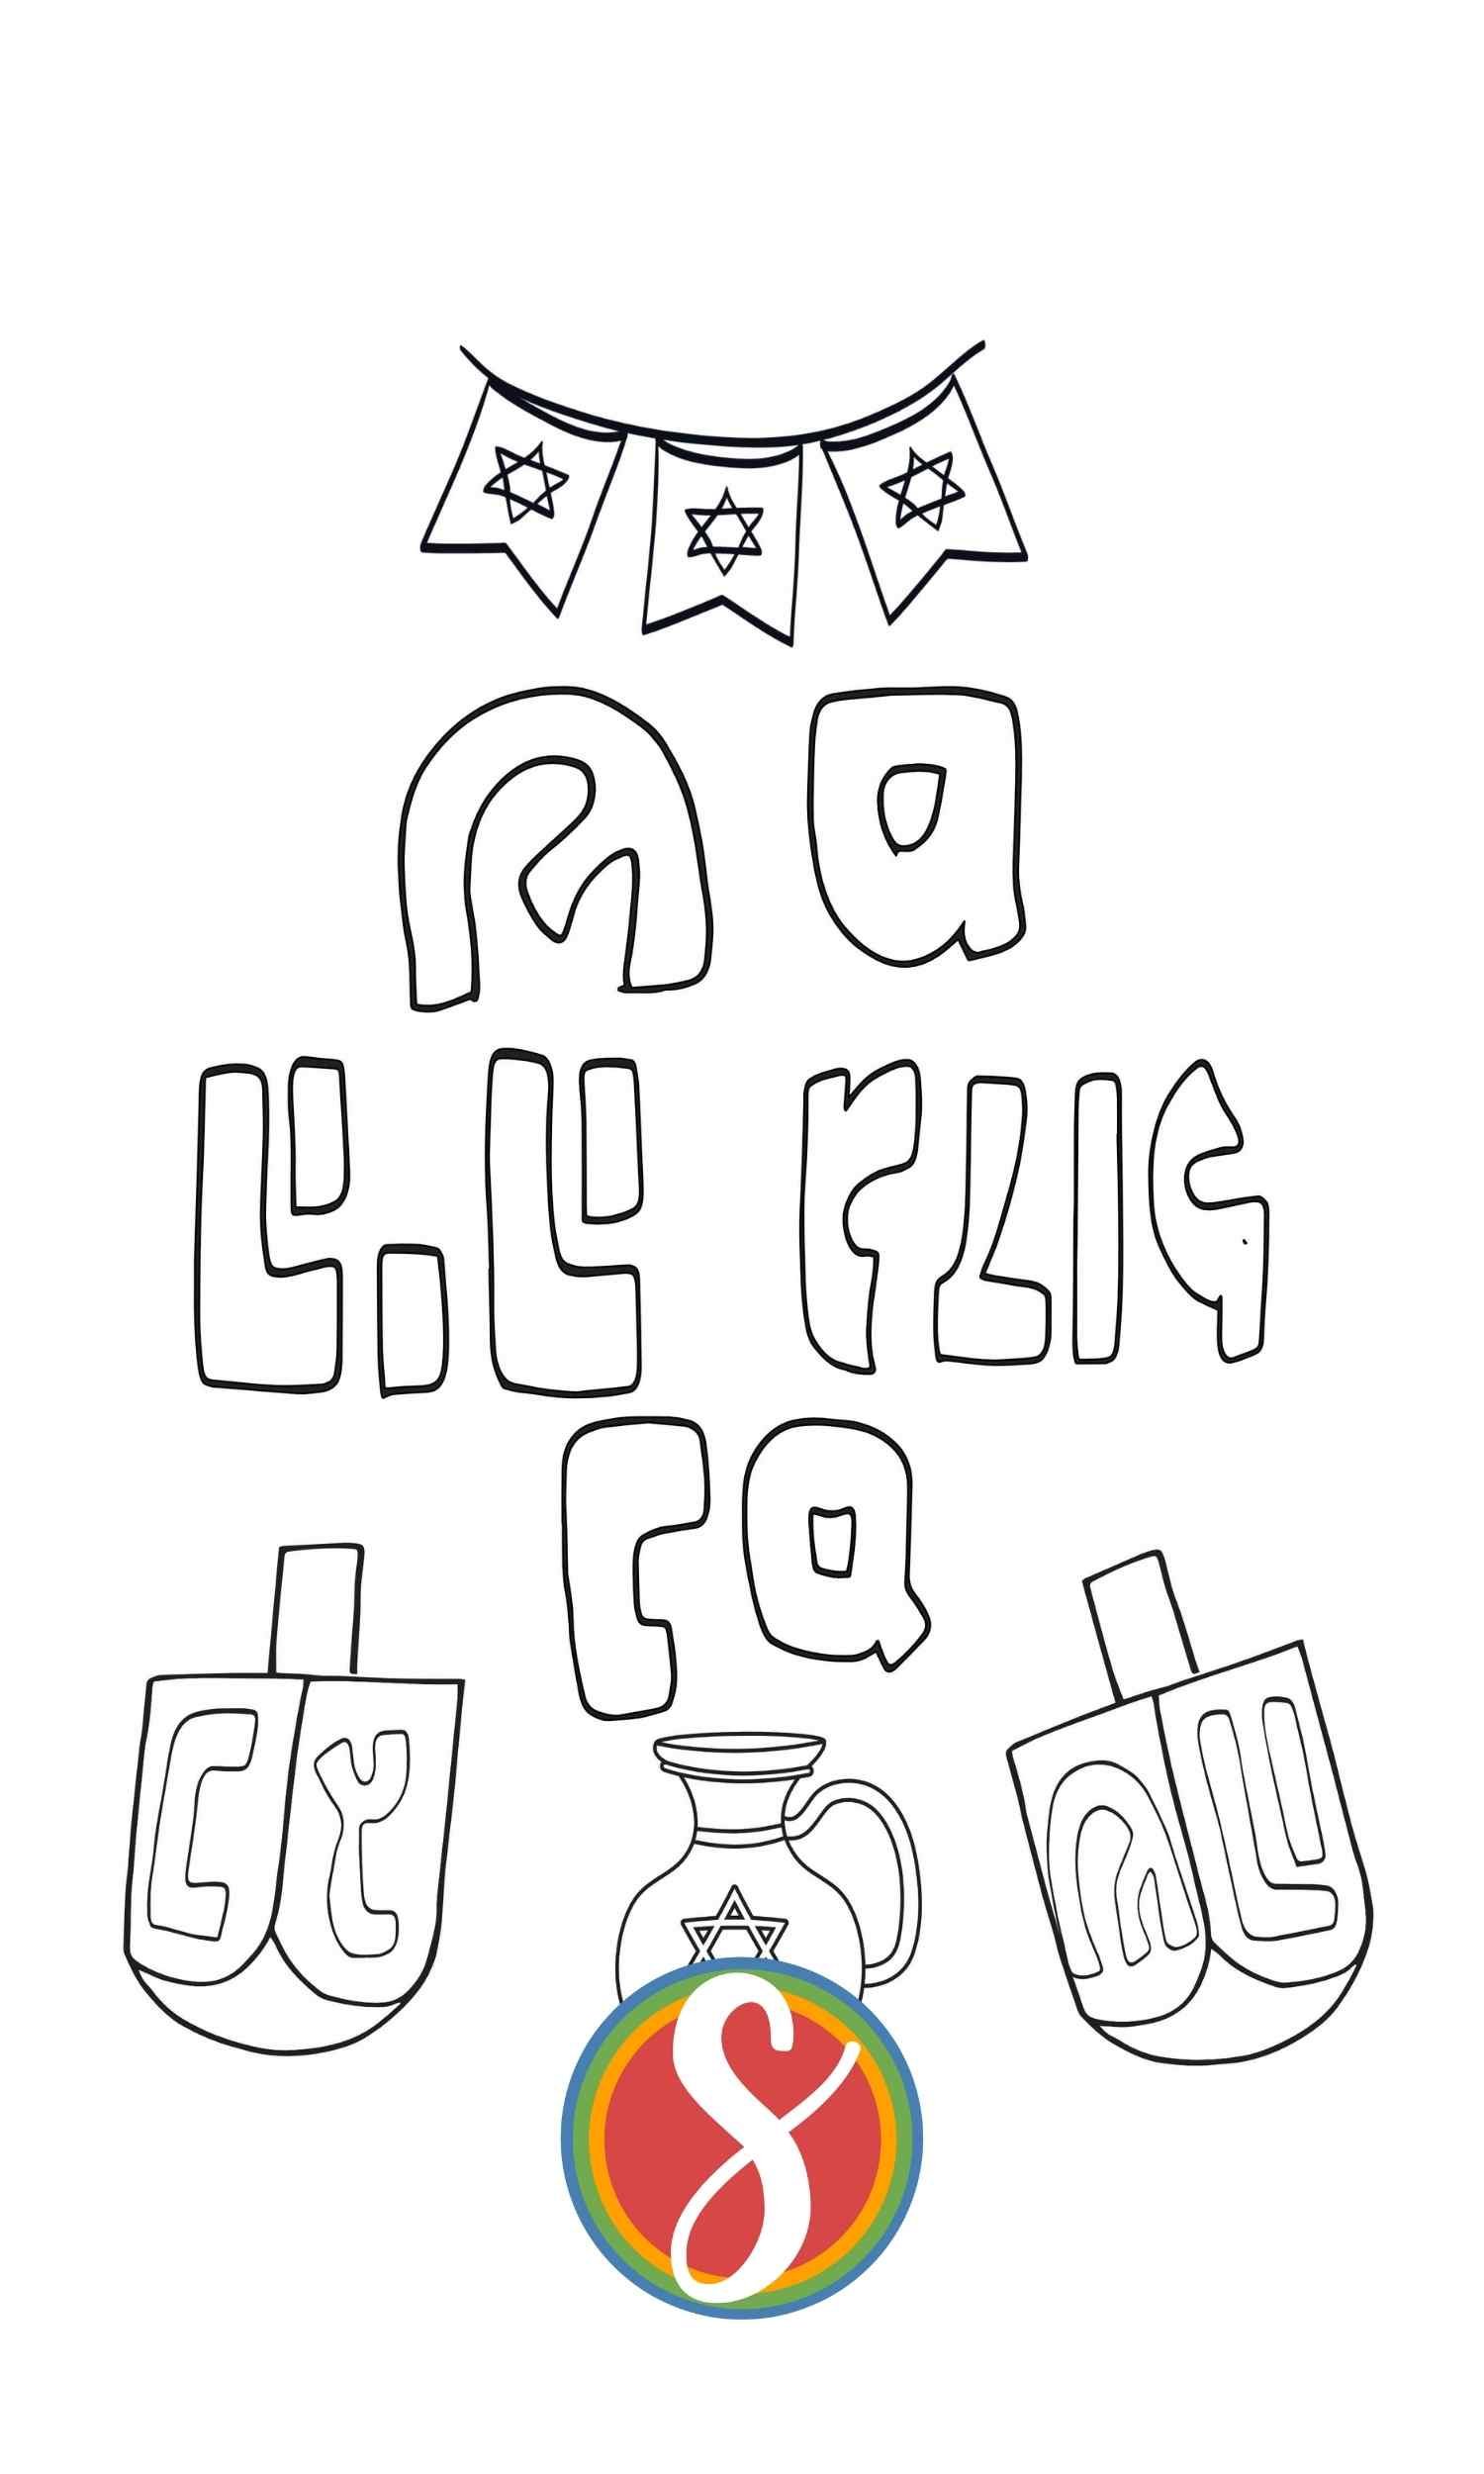 hanukkah coloring page, star of david banner, oil jug, two dreidels